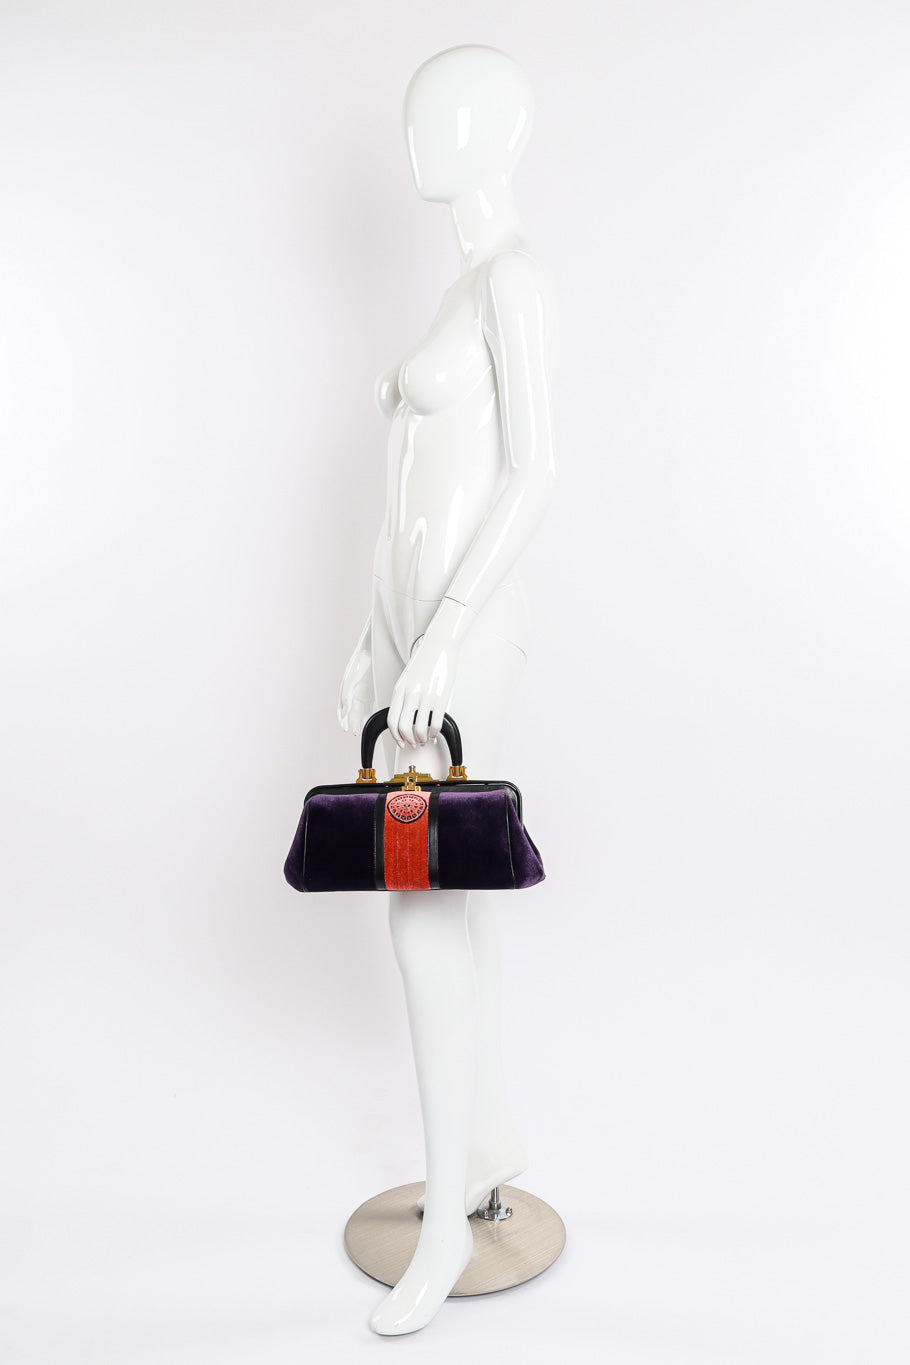 Velvet handbag by Roberta di Camerino on white background held by mannequin @recessla